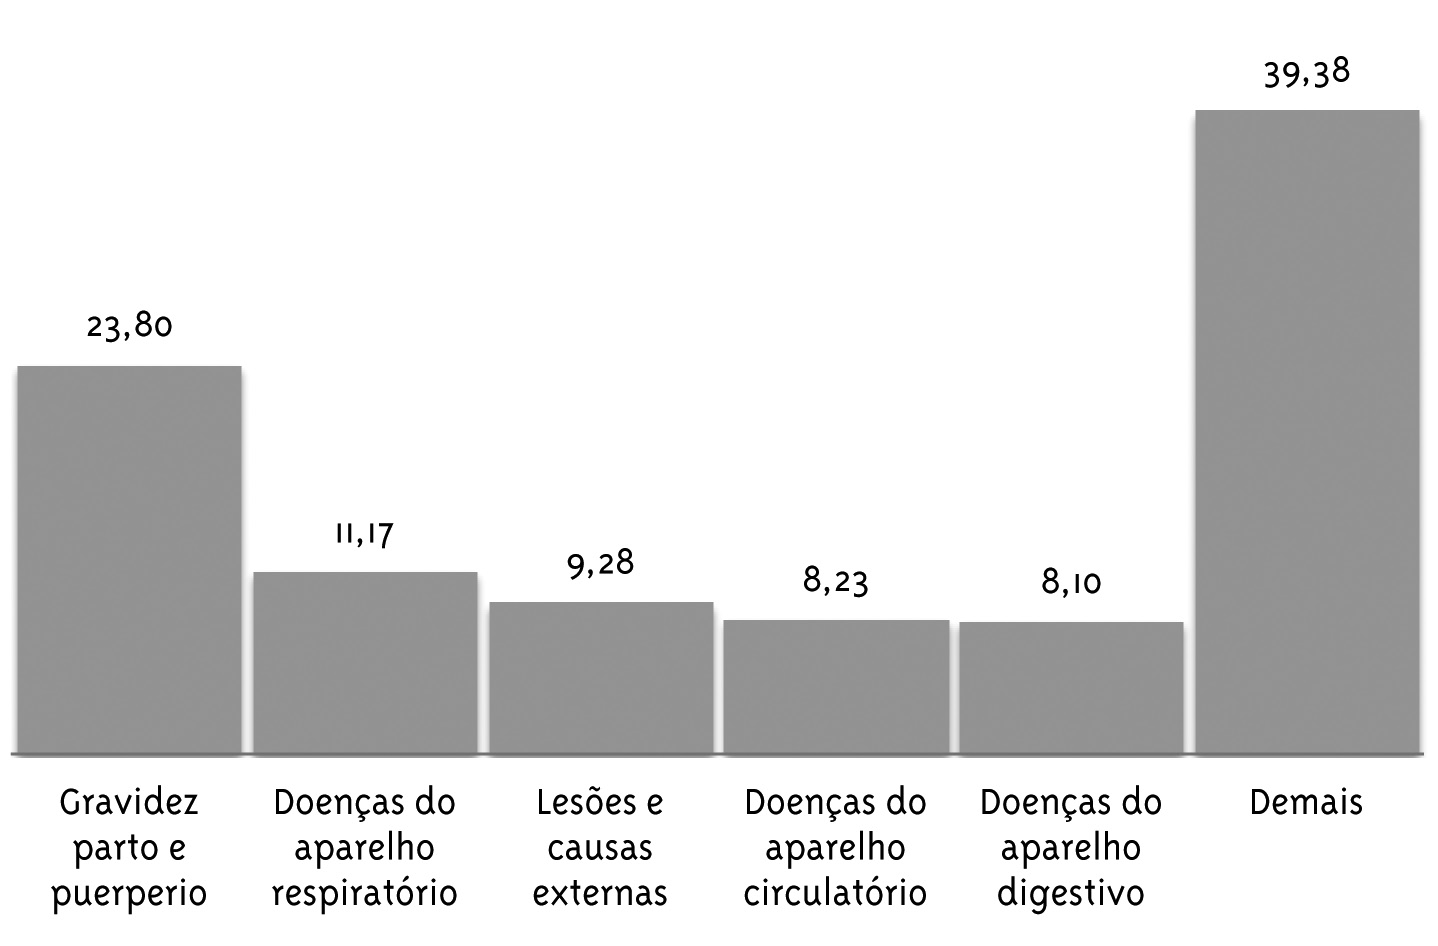 Gráfico 4 - Principais motivos de internação em Cubatão (%): 2000-2009 Fonte: http://sistema.saude.sp.